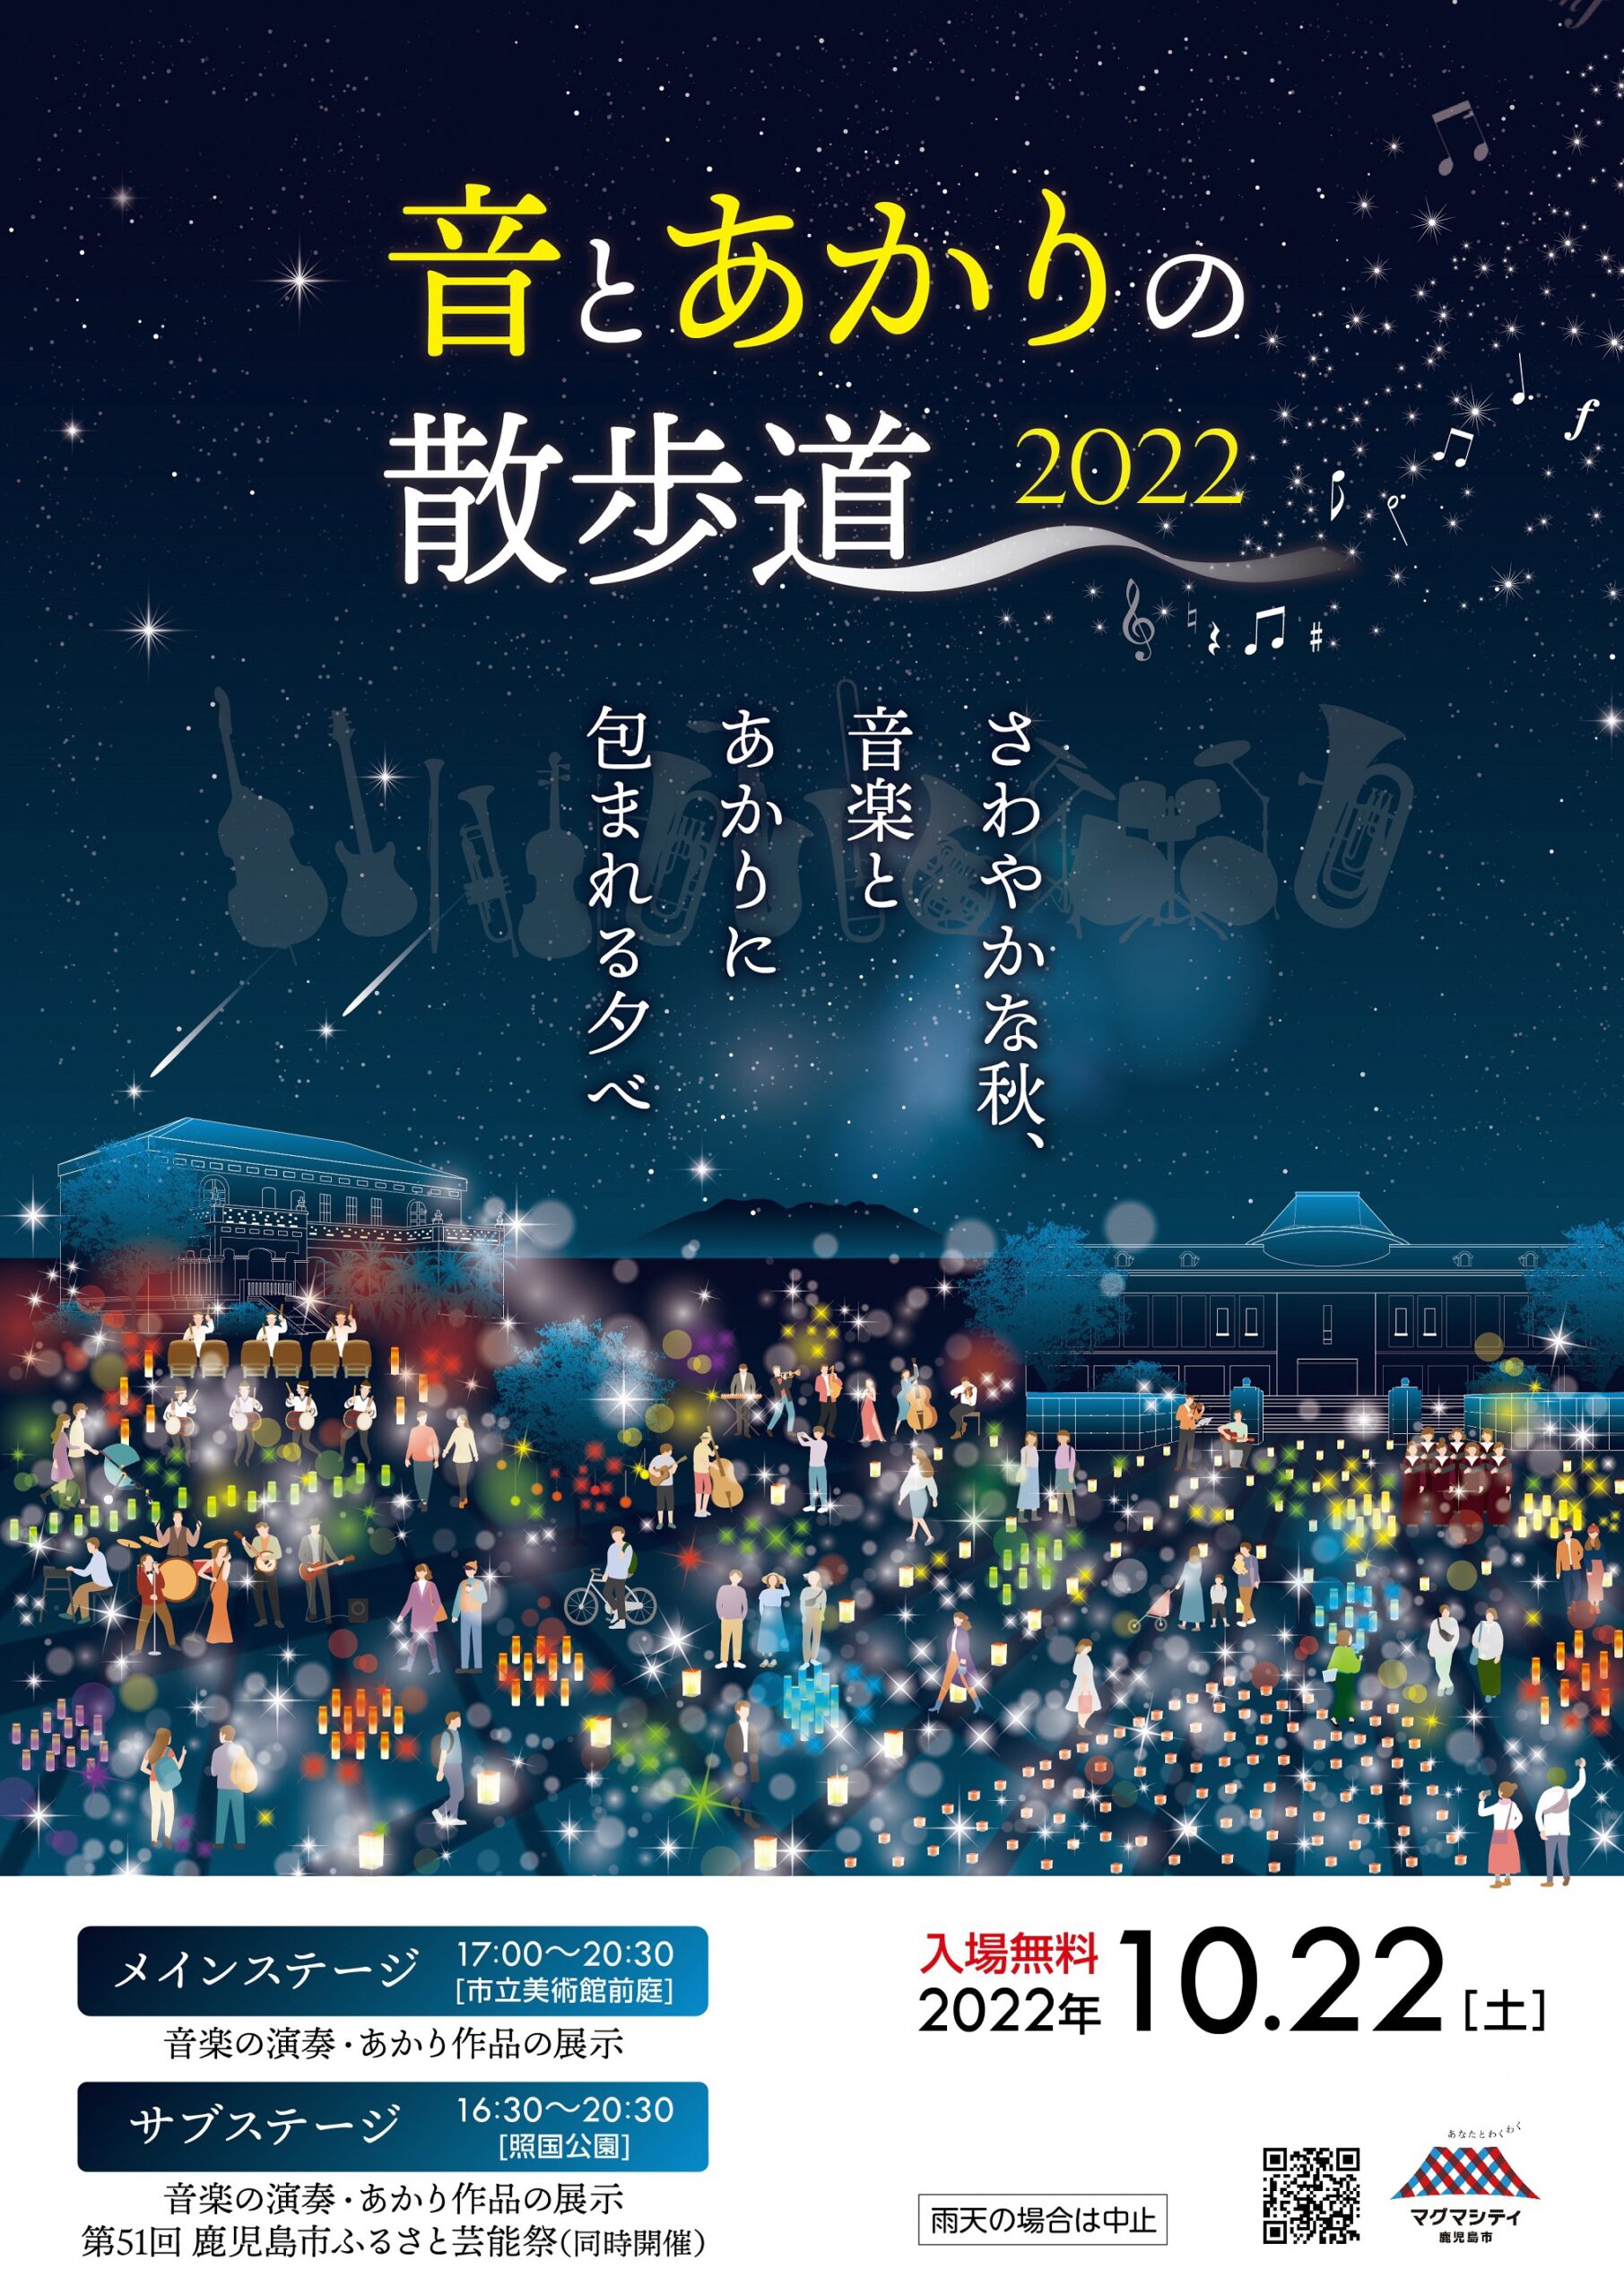 【予定通り開催します】音とあかりの散歩道2022・第51回鹿児島市ふるさと芸能祭